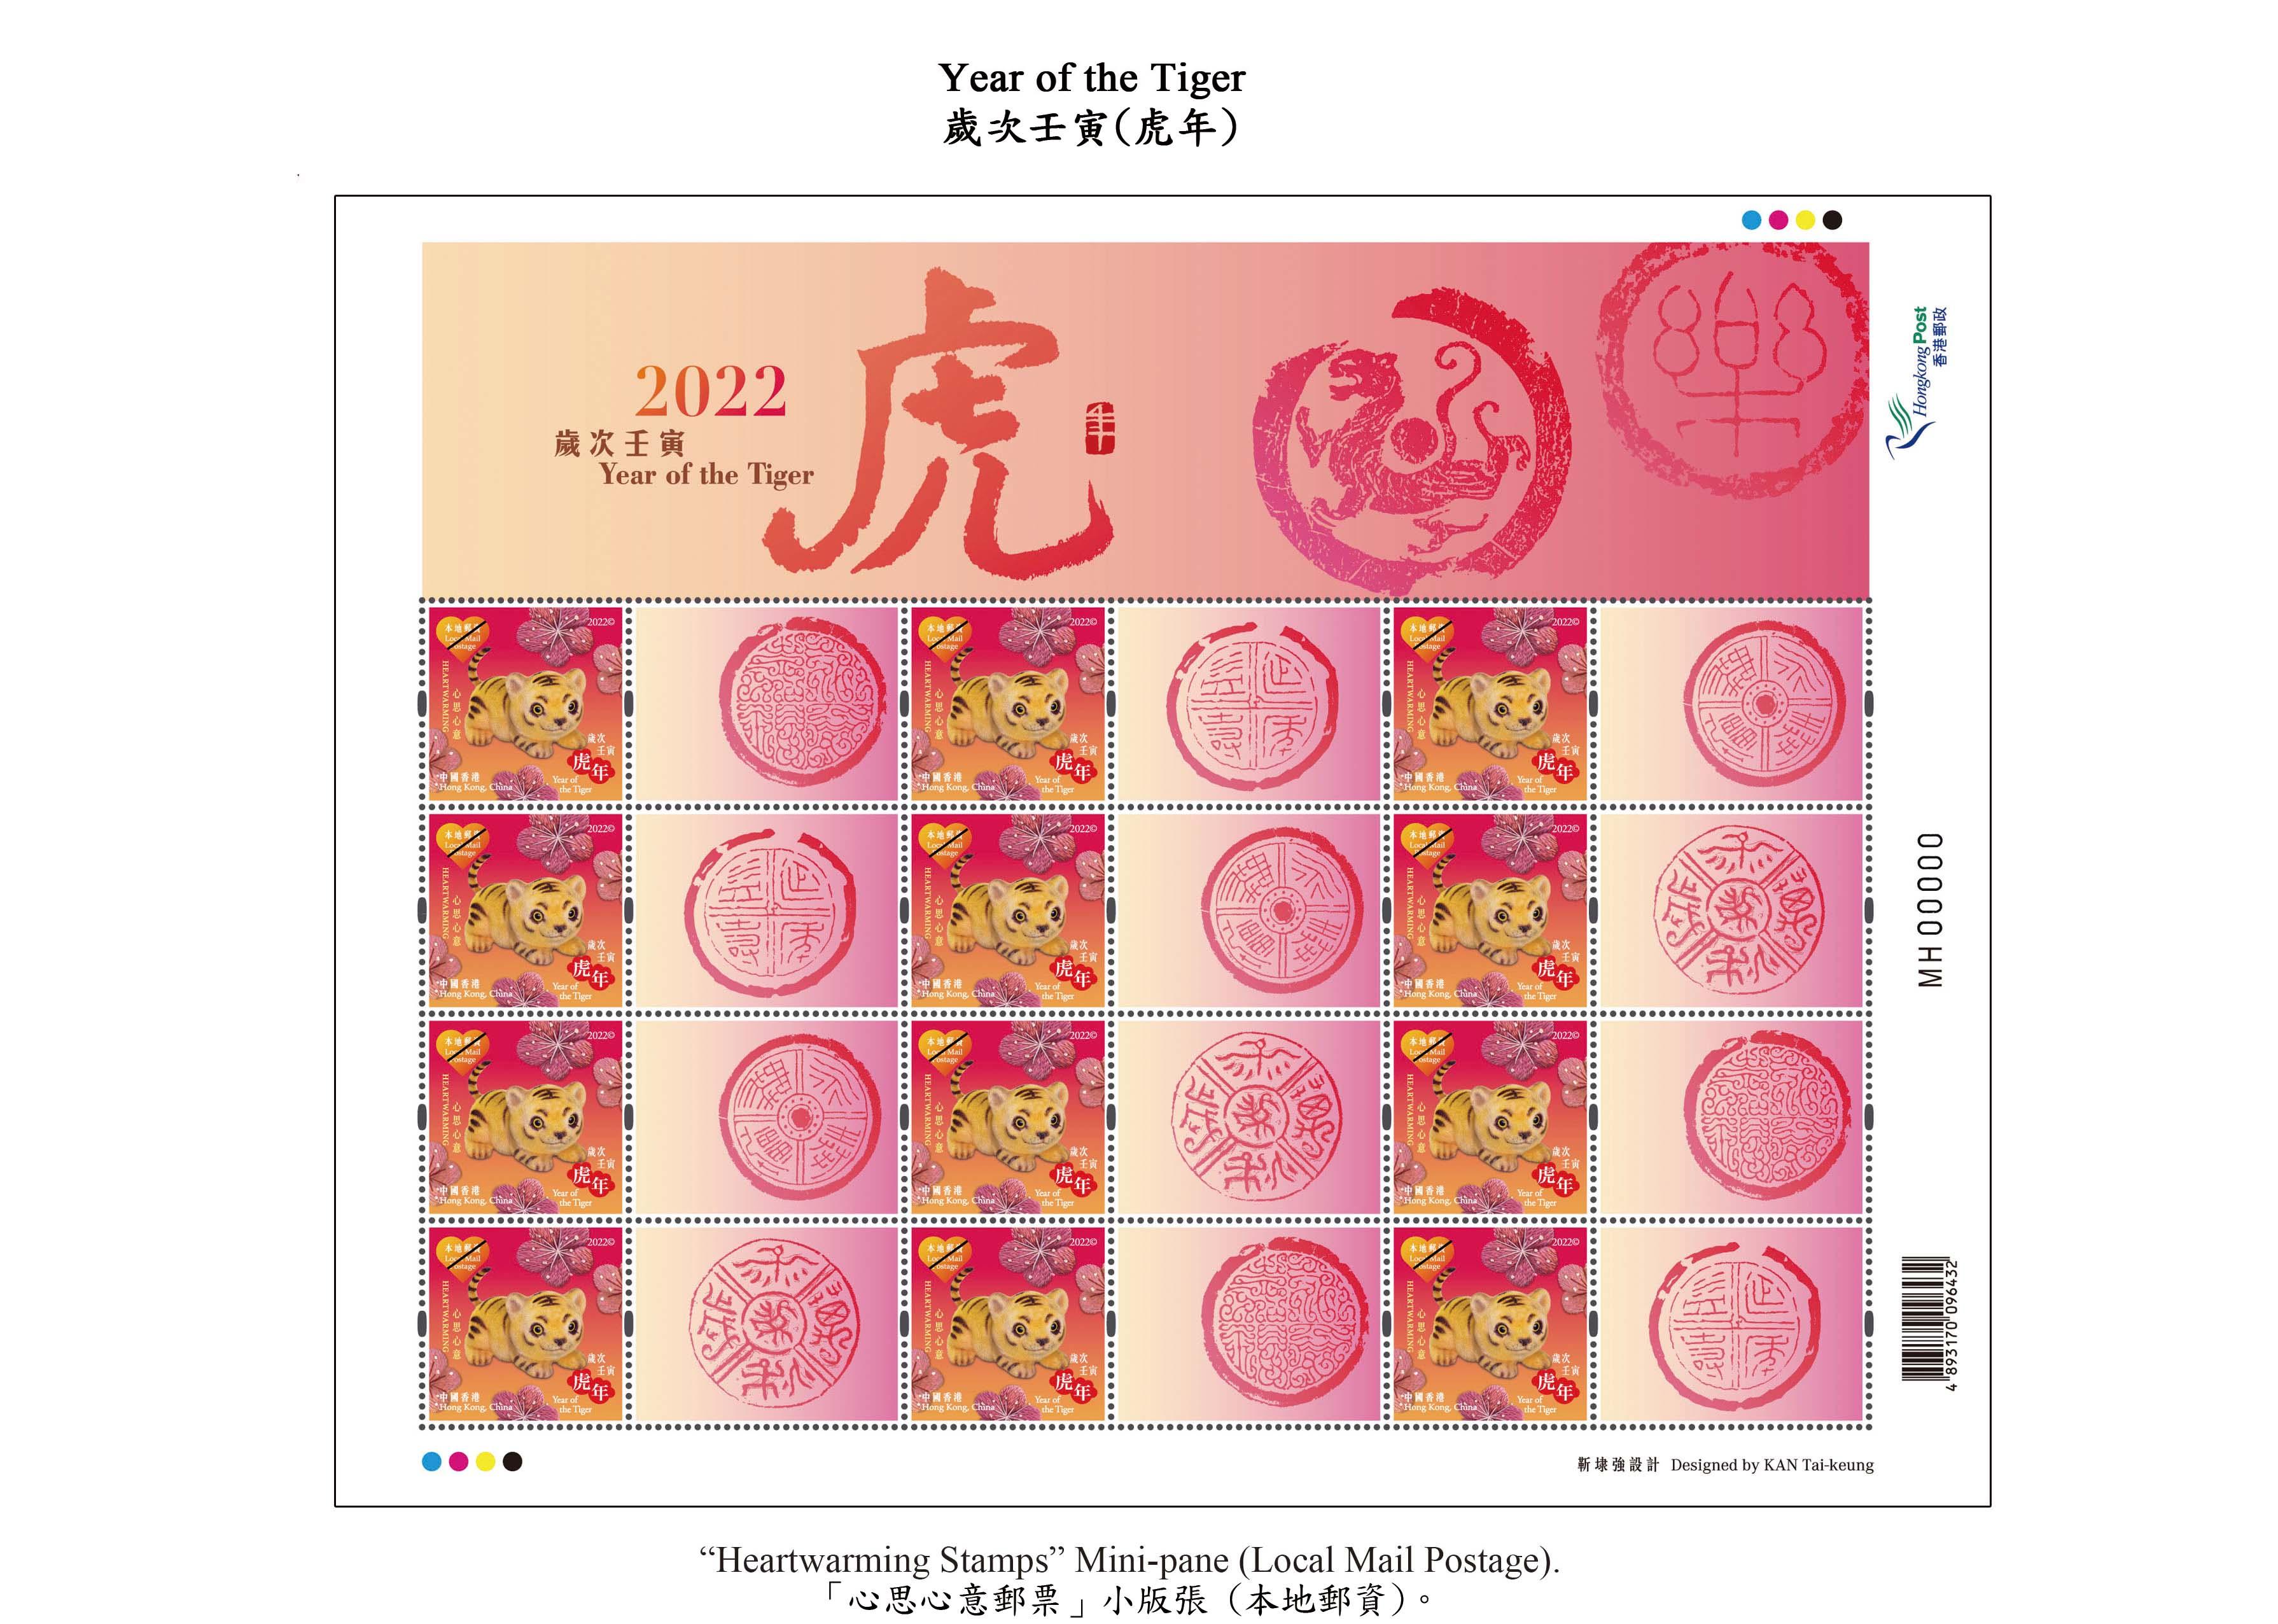 香港郵政一月十八日（星期二）發行以「歲次壬寅（虎年）」為題的特別郵票及相關集郵品。圖示「心思心意郵票」小版張（本地郵資）。
